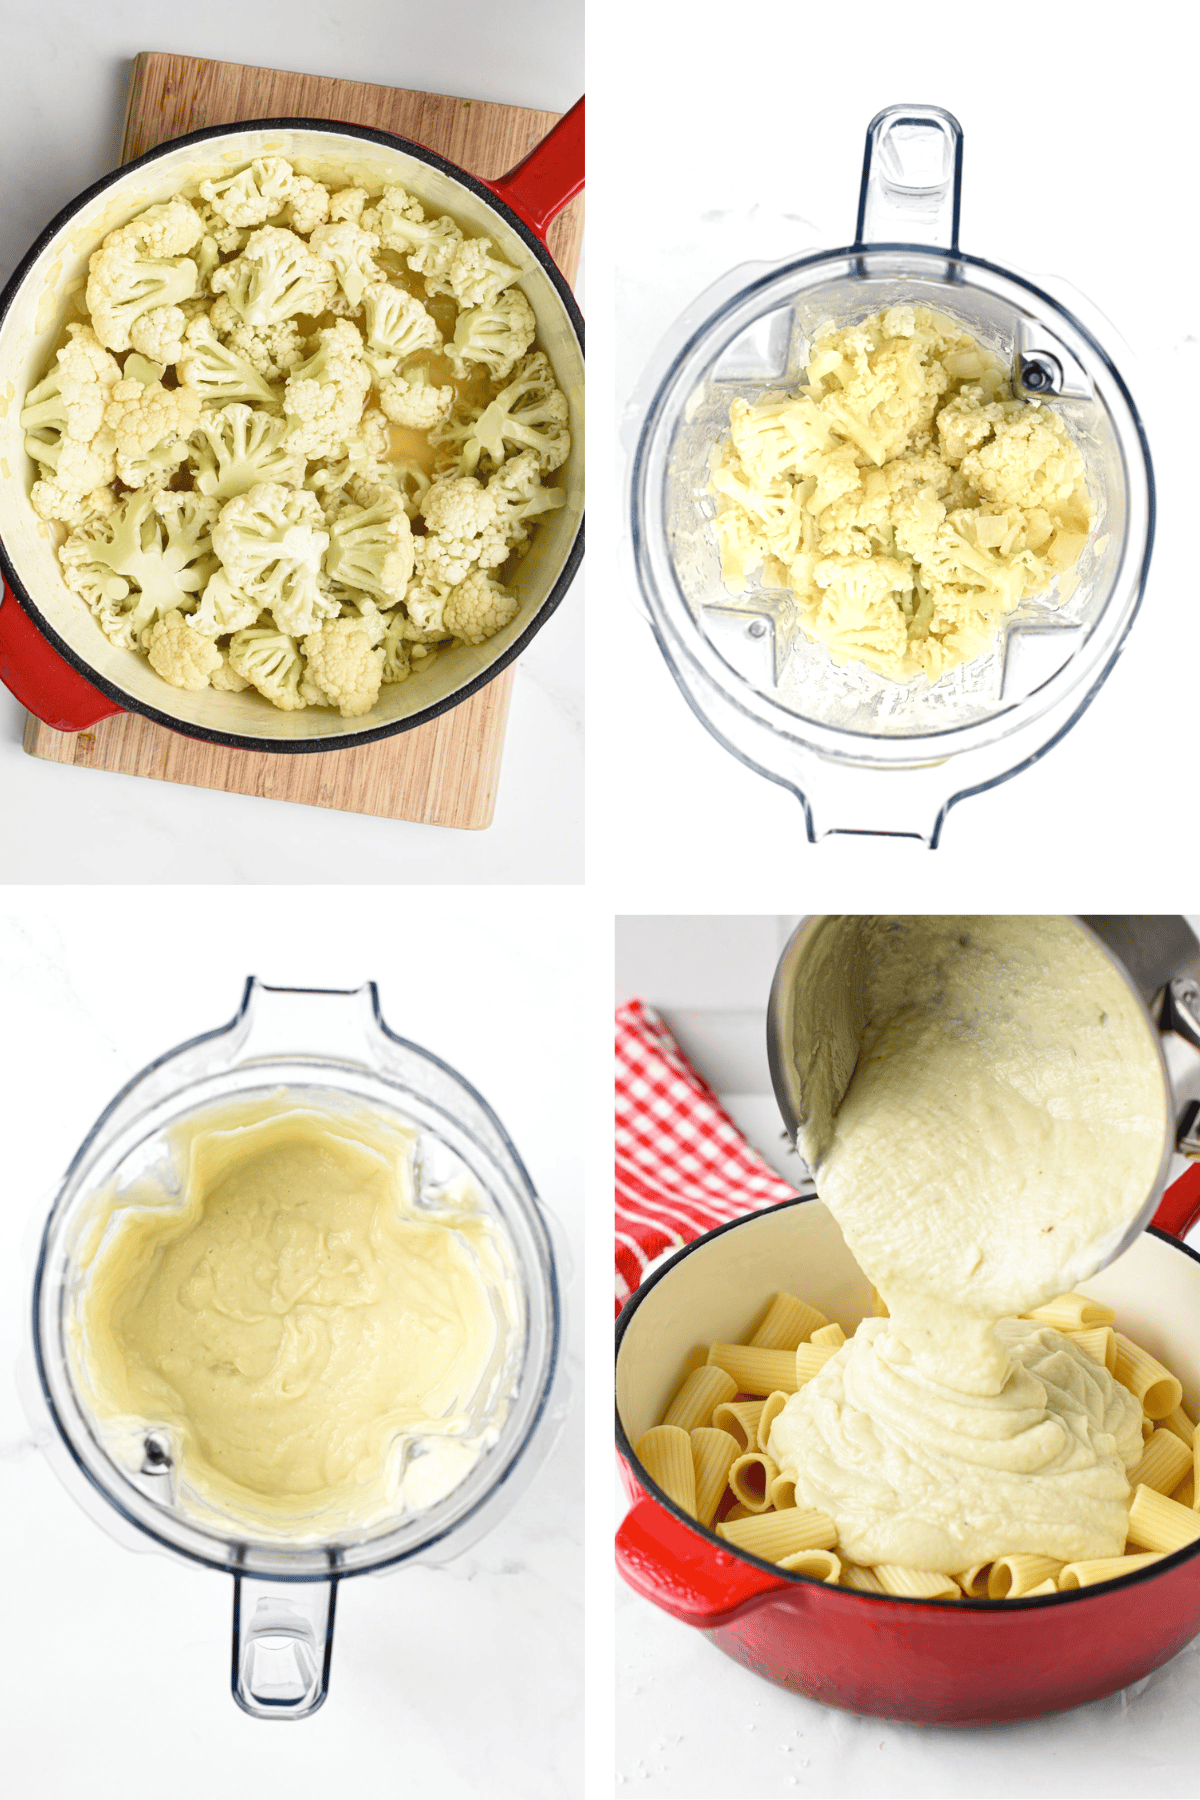 How to make Cauliflower Alfredo Sauce